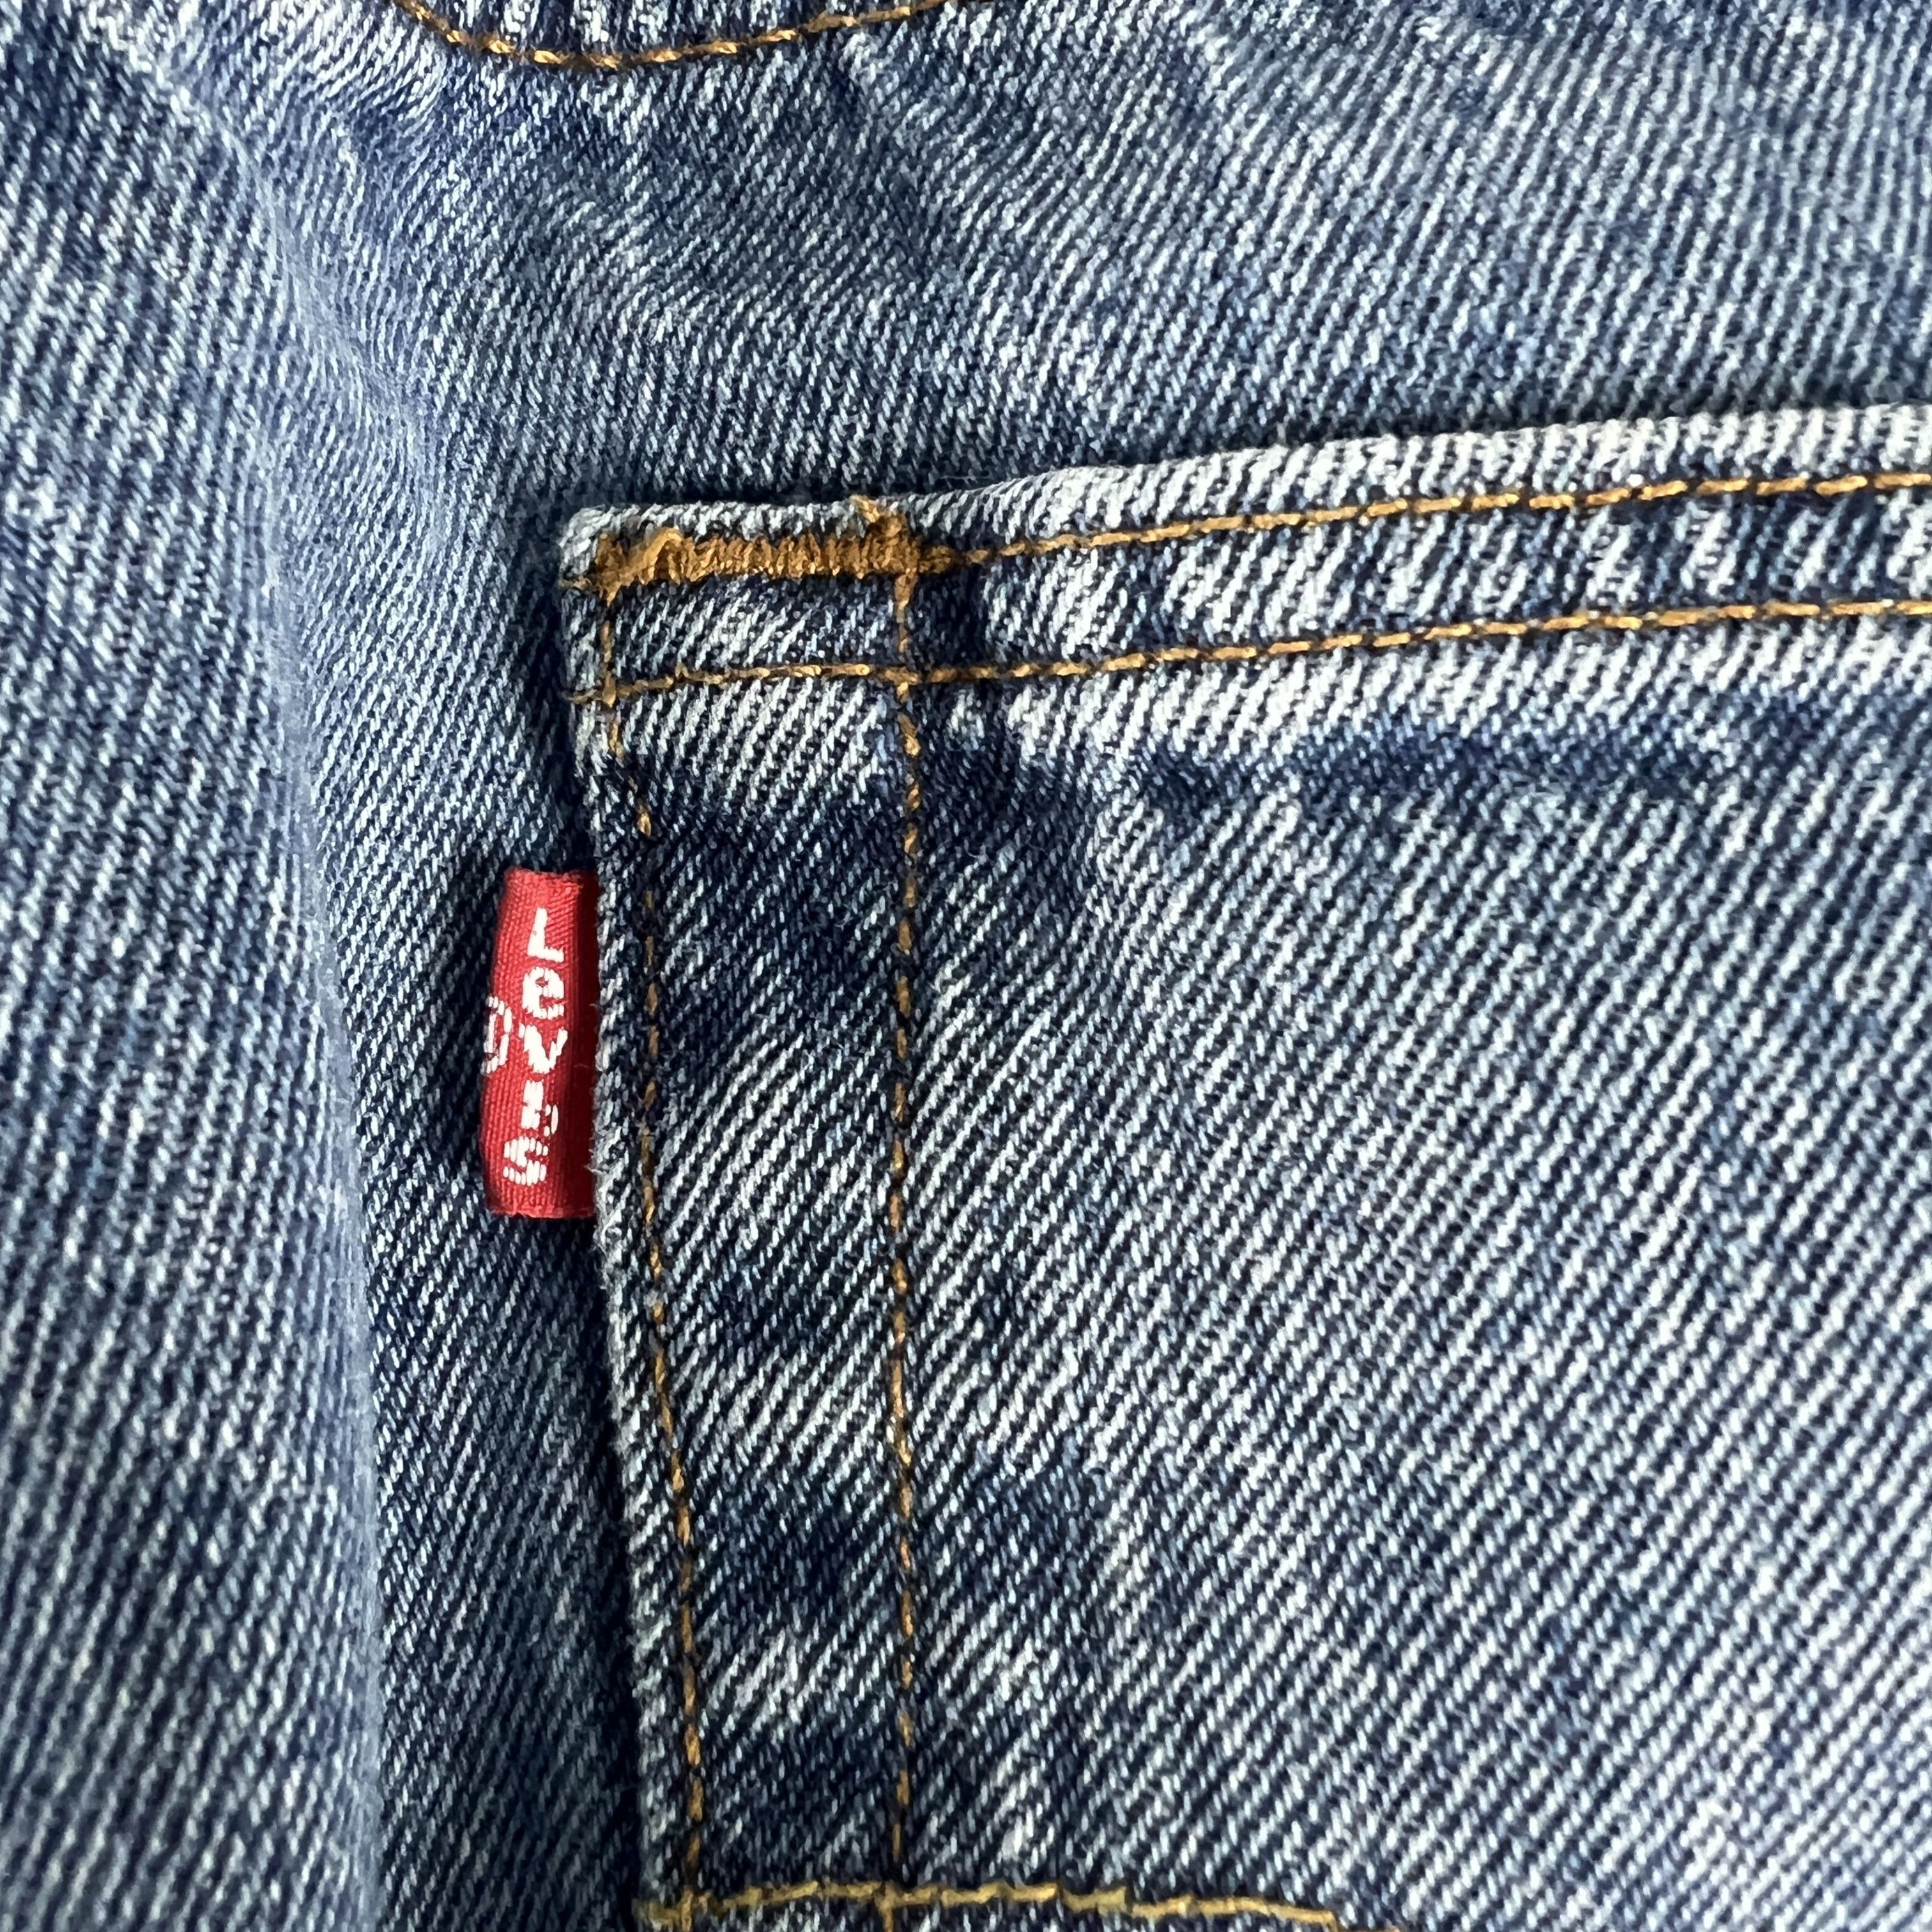 Levi's Levi's Jeans 501 XX Original Straight Blue Cotton Denim Size US 33 - 13 Thumbnail